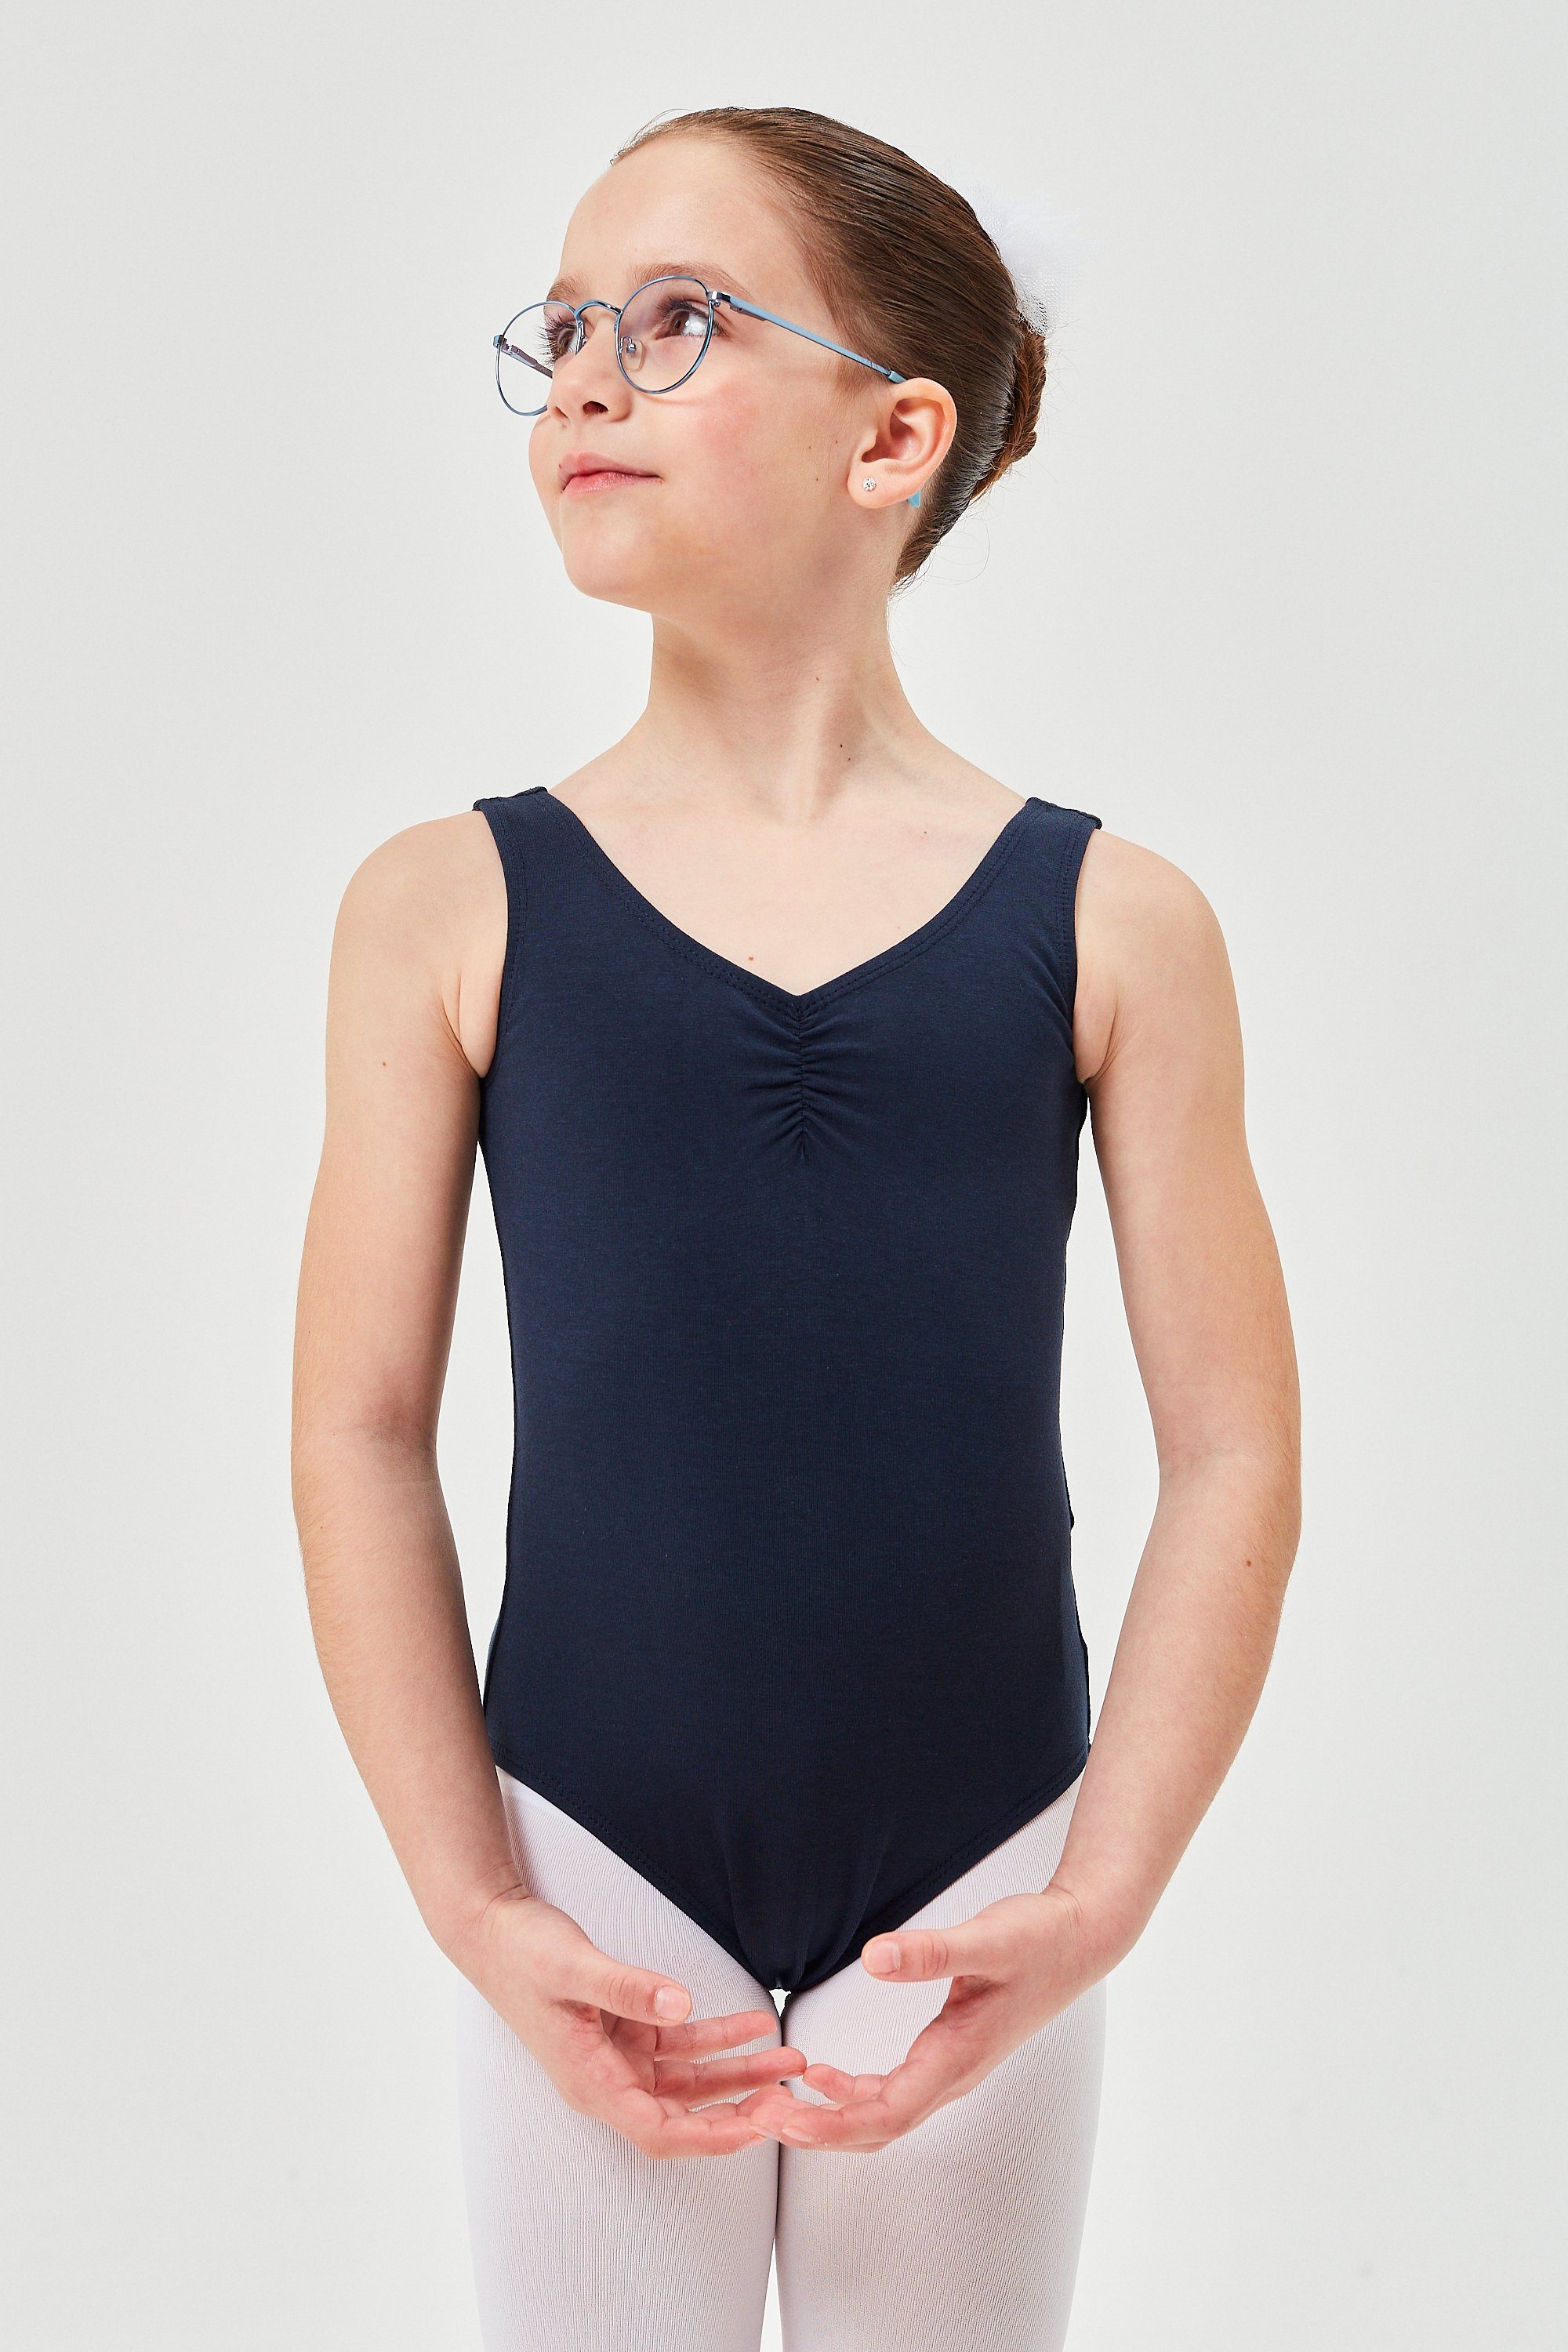 tanzmuster Body Kinder Ballettanzug Mona mit gerafftem Ausschnitt ärmellos marineblau